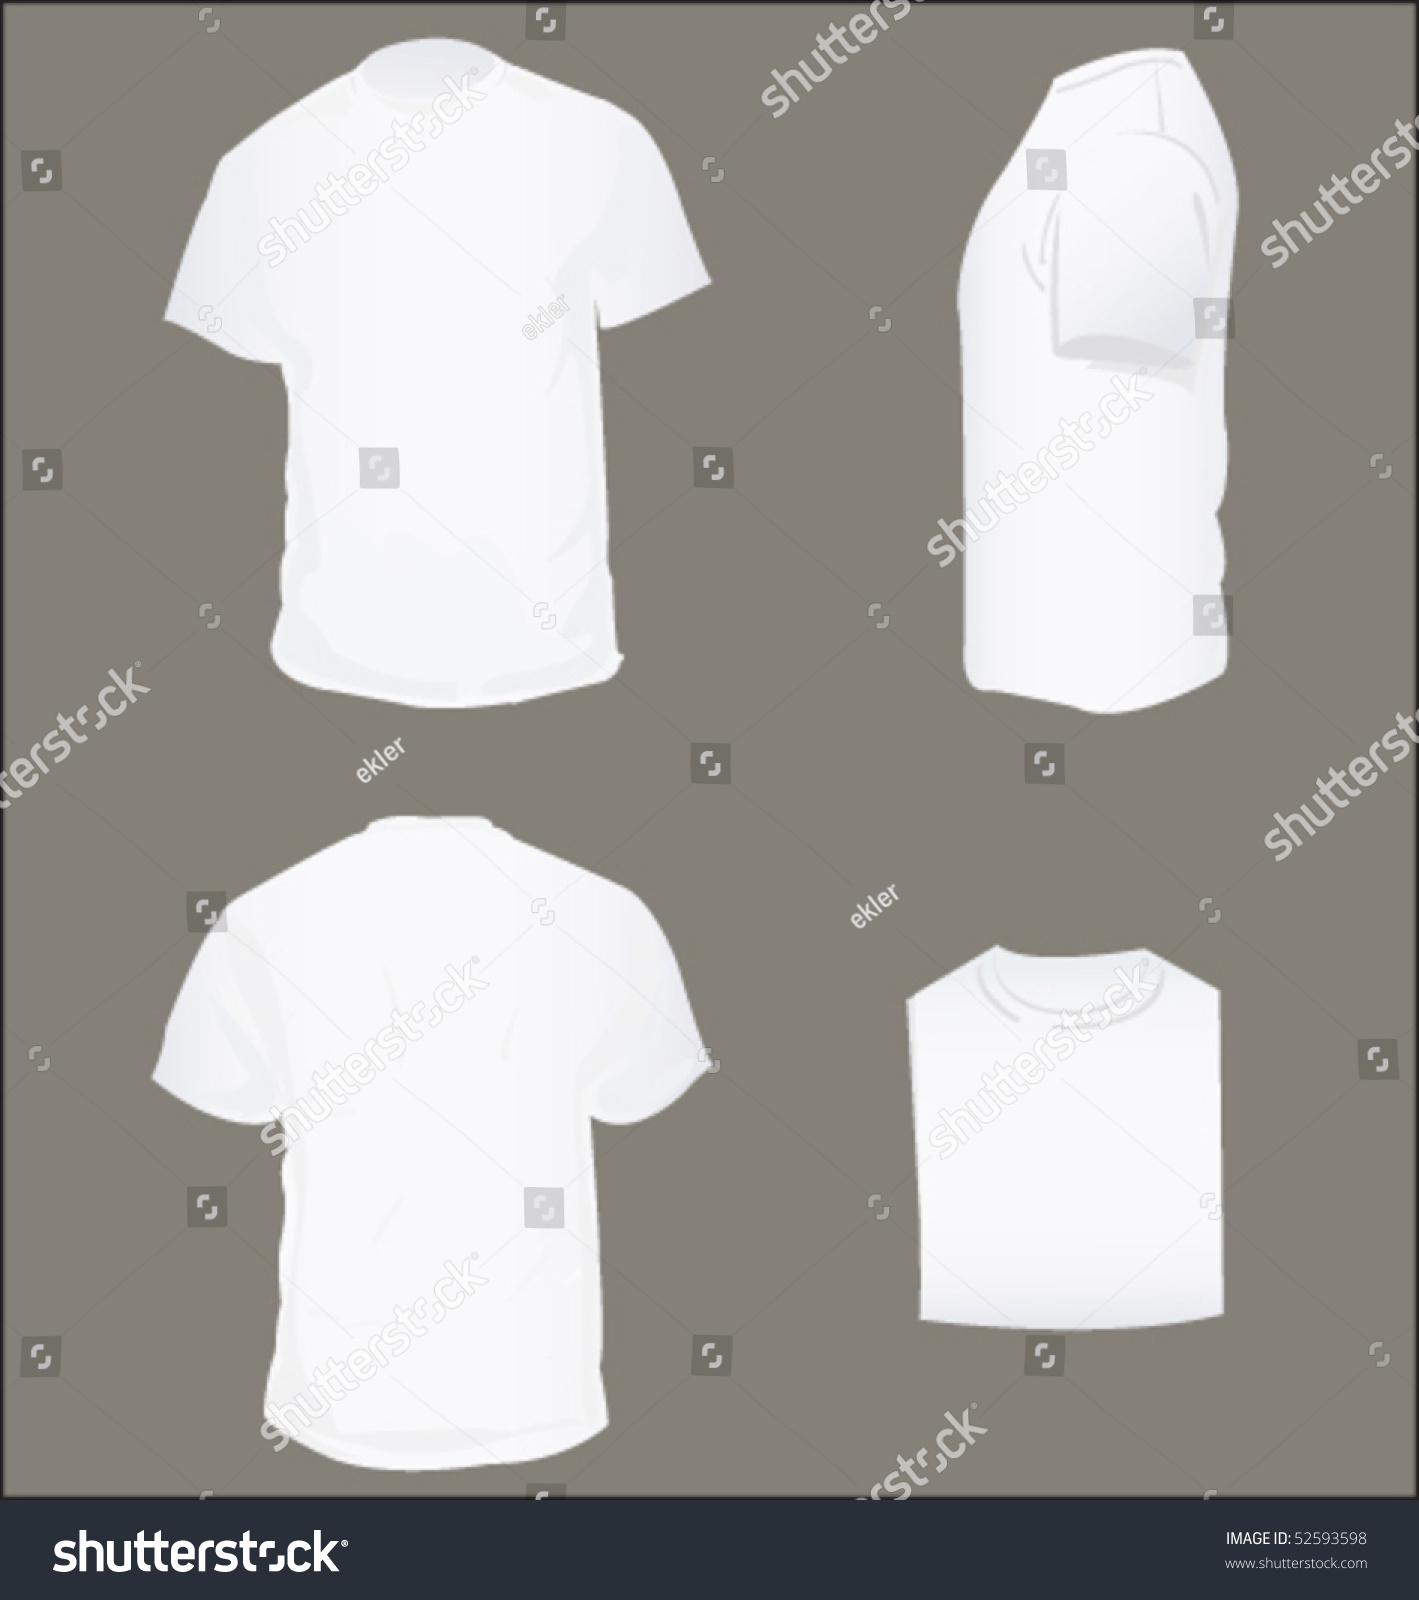 White Blank T Shirt Stock Vector Illustration 52593598 : Shutterstock